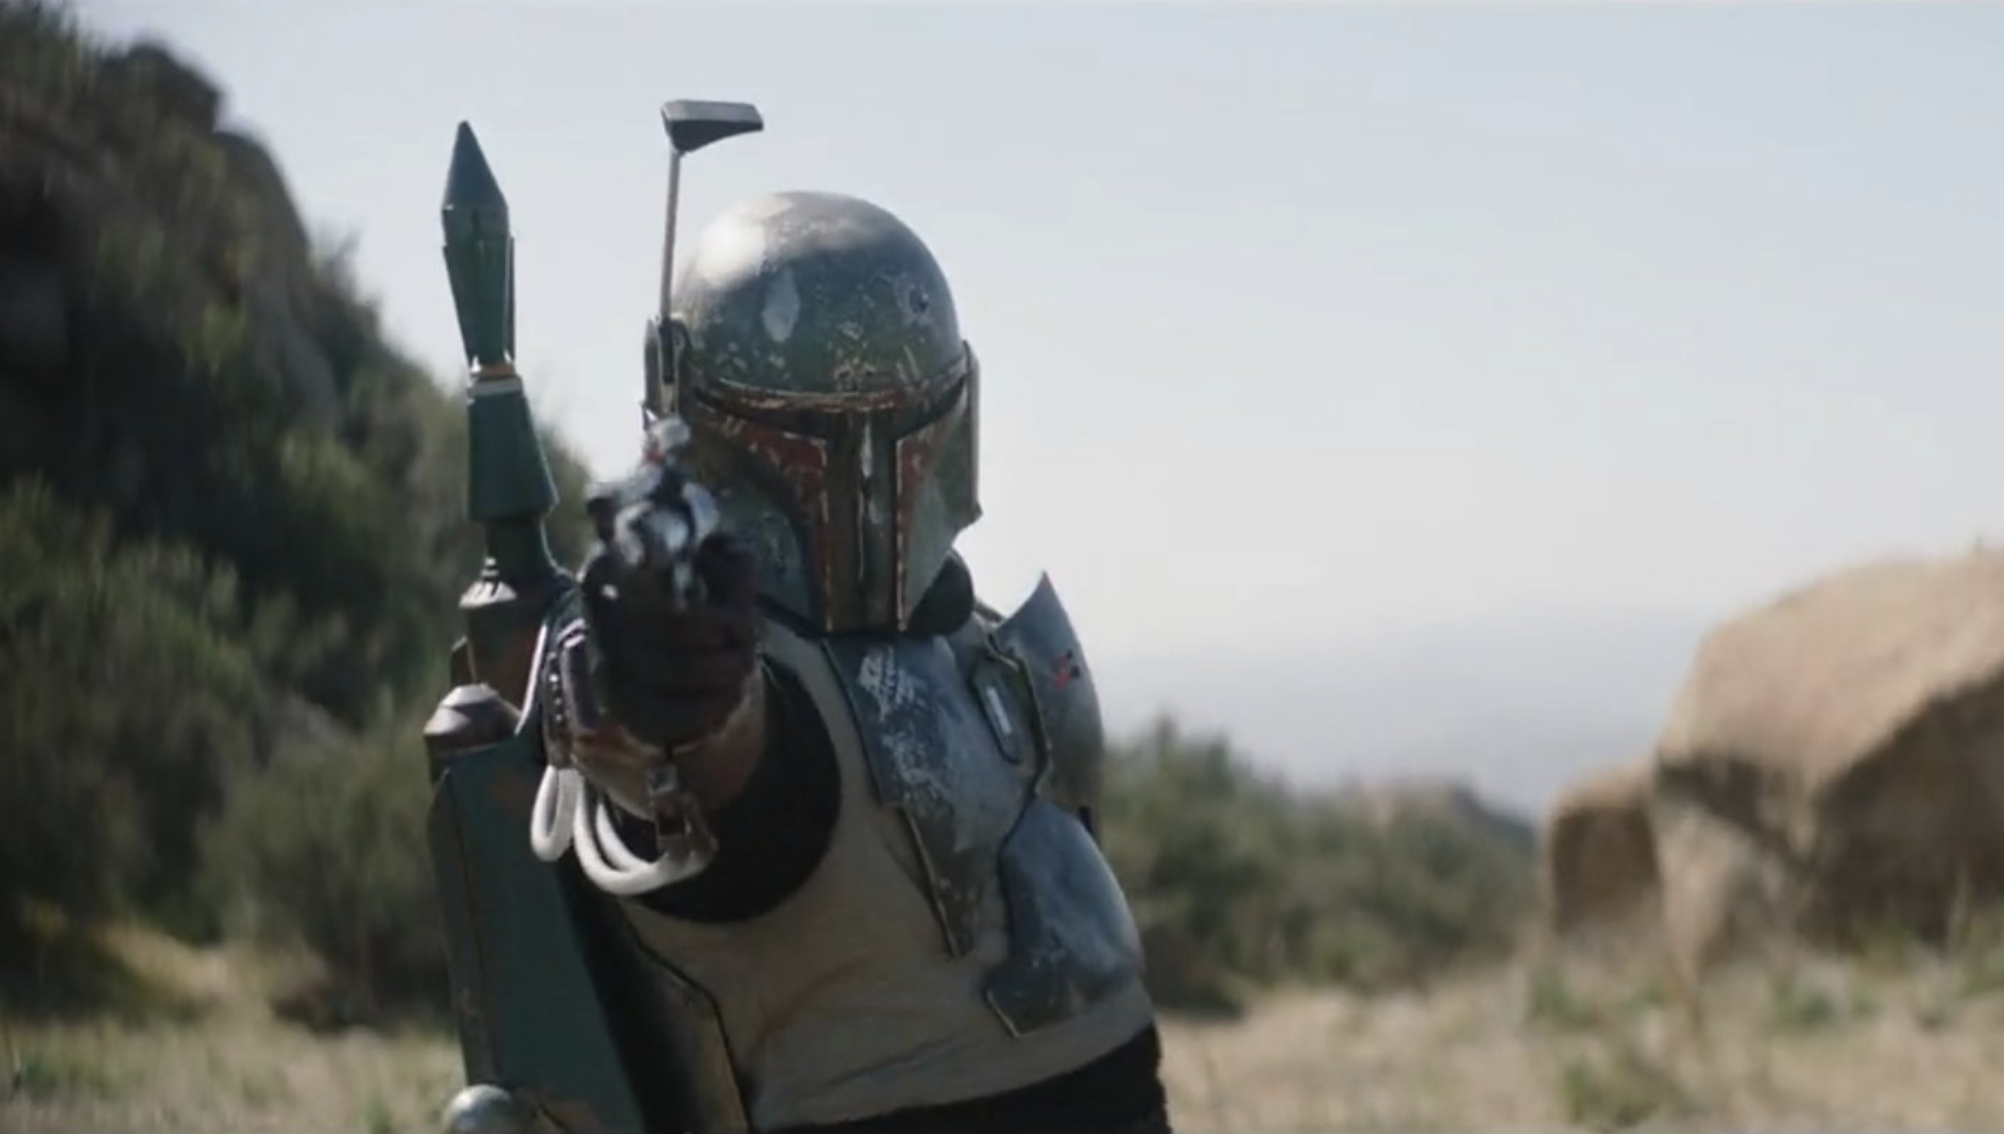 Star Wars actor slams Disney for Boba Fett's ship name change